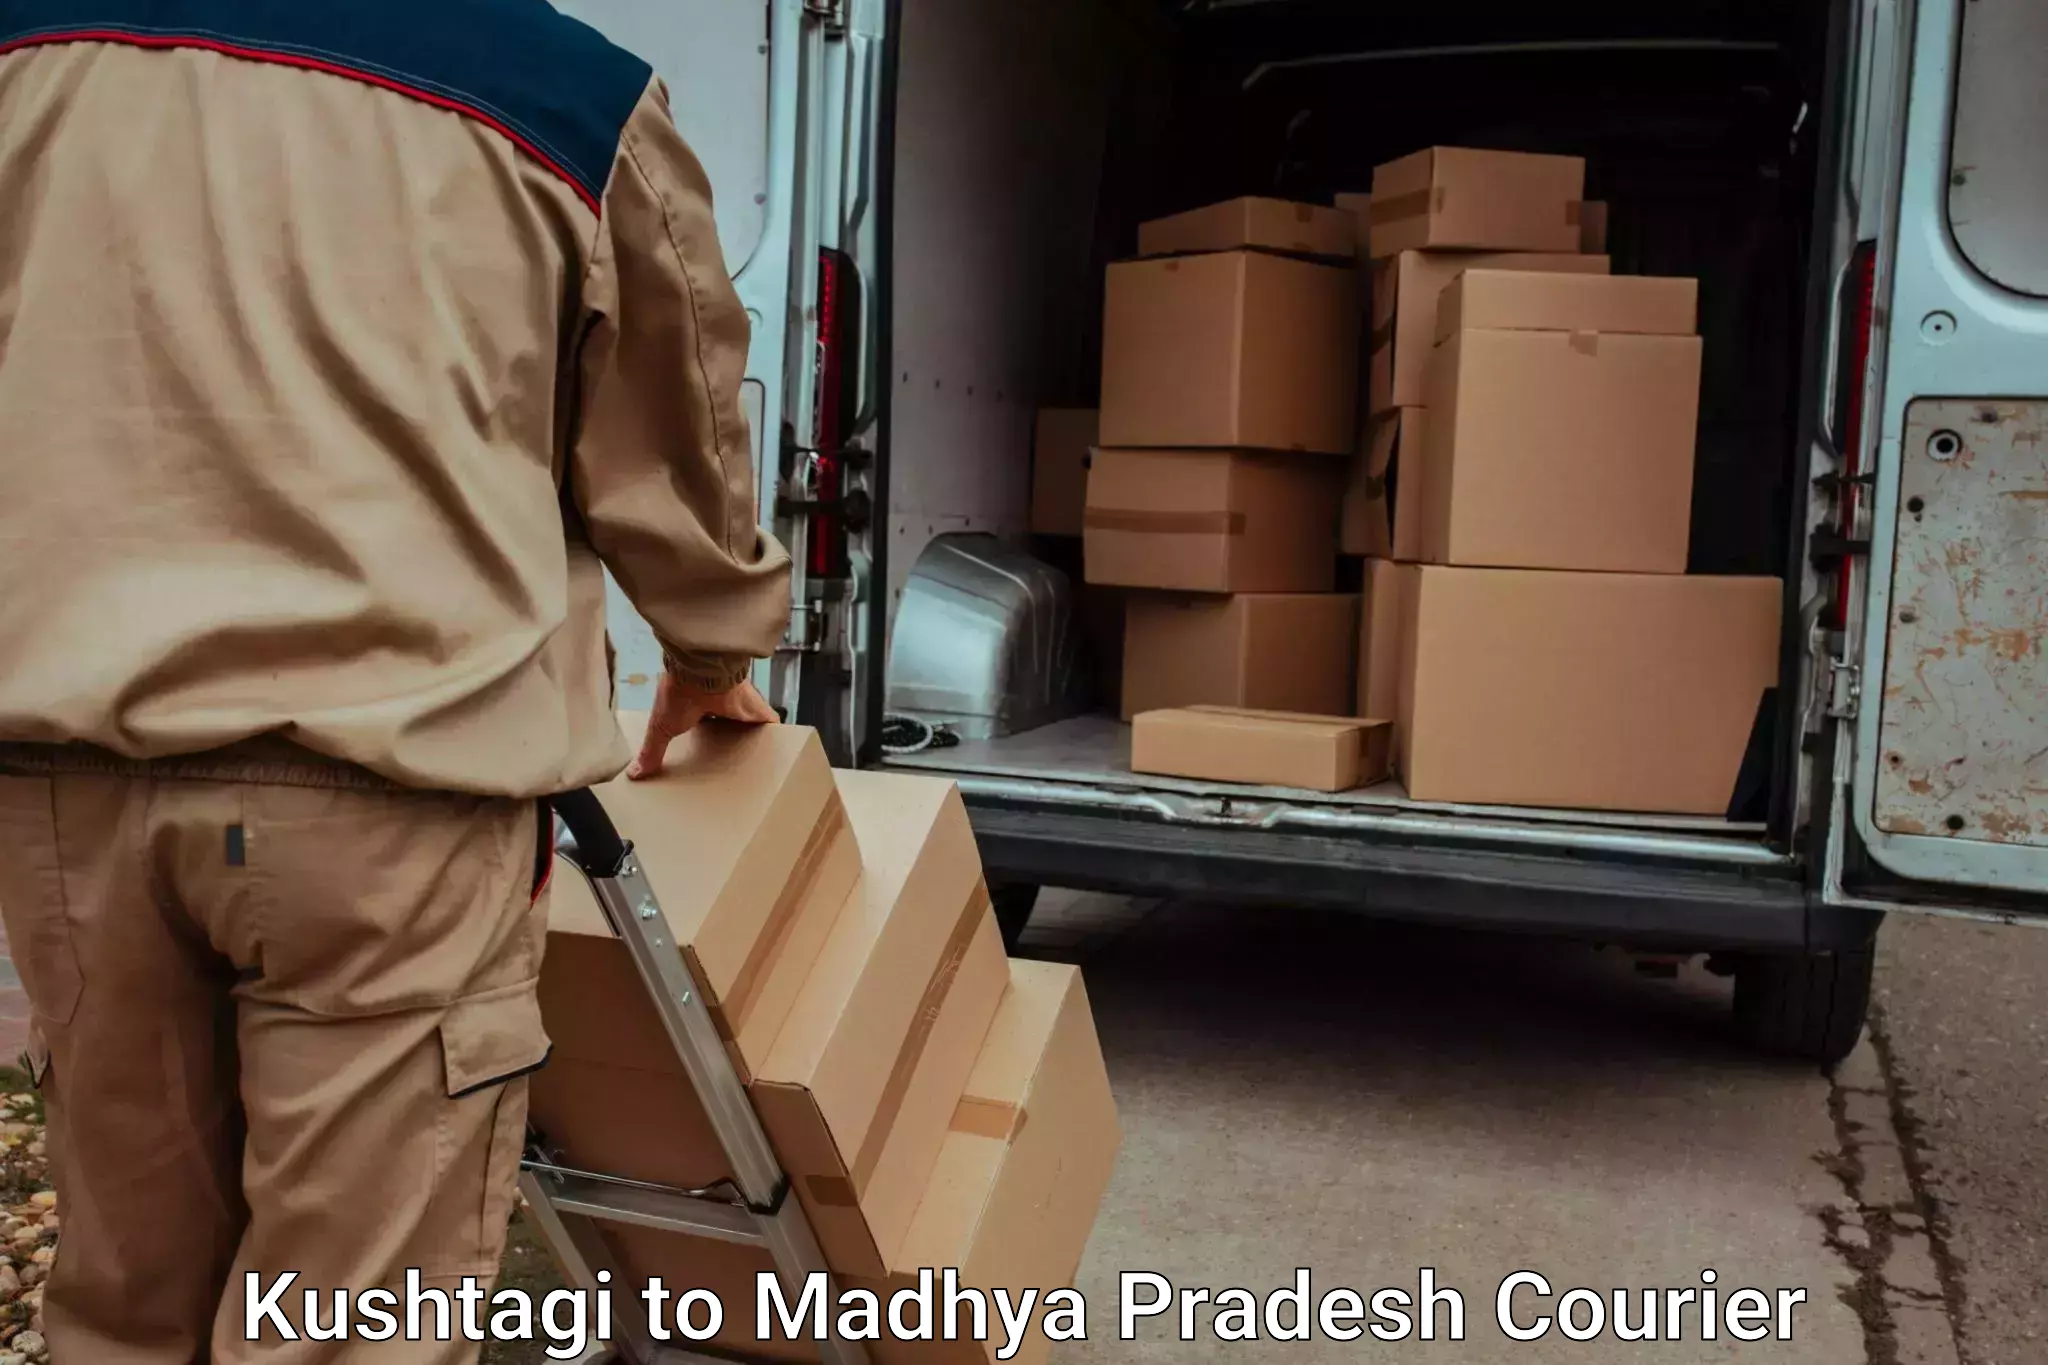 Luggage shipment tracking Kushtagi to Madhya Pradesh